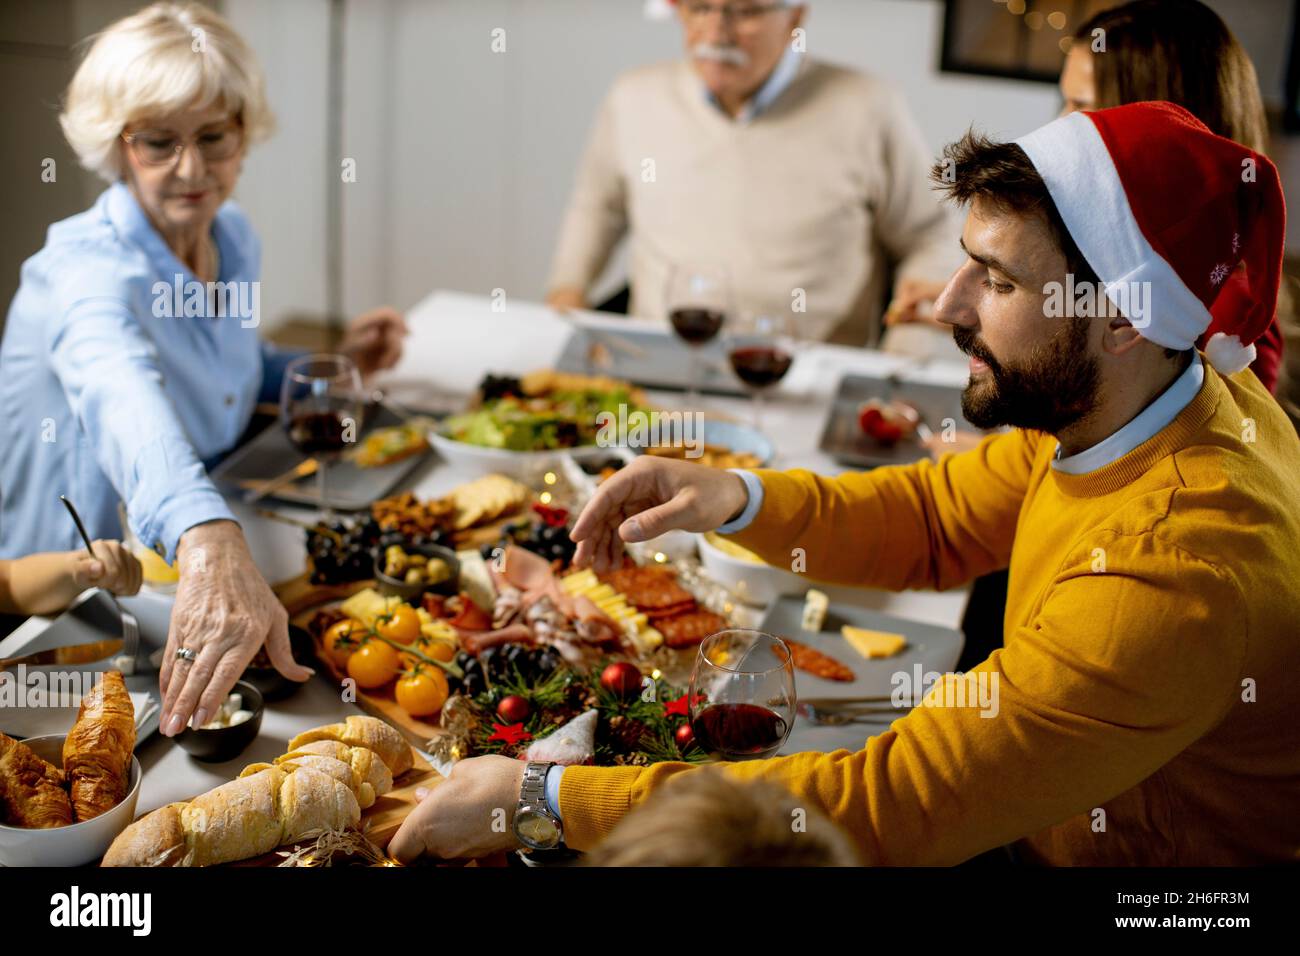 Glückliche Familie mit mehreren Generationen, die zu Hause das neue Jahr am Tisch feiert Stockfoto